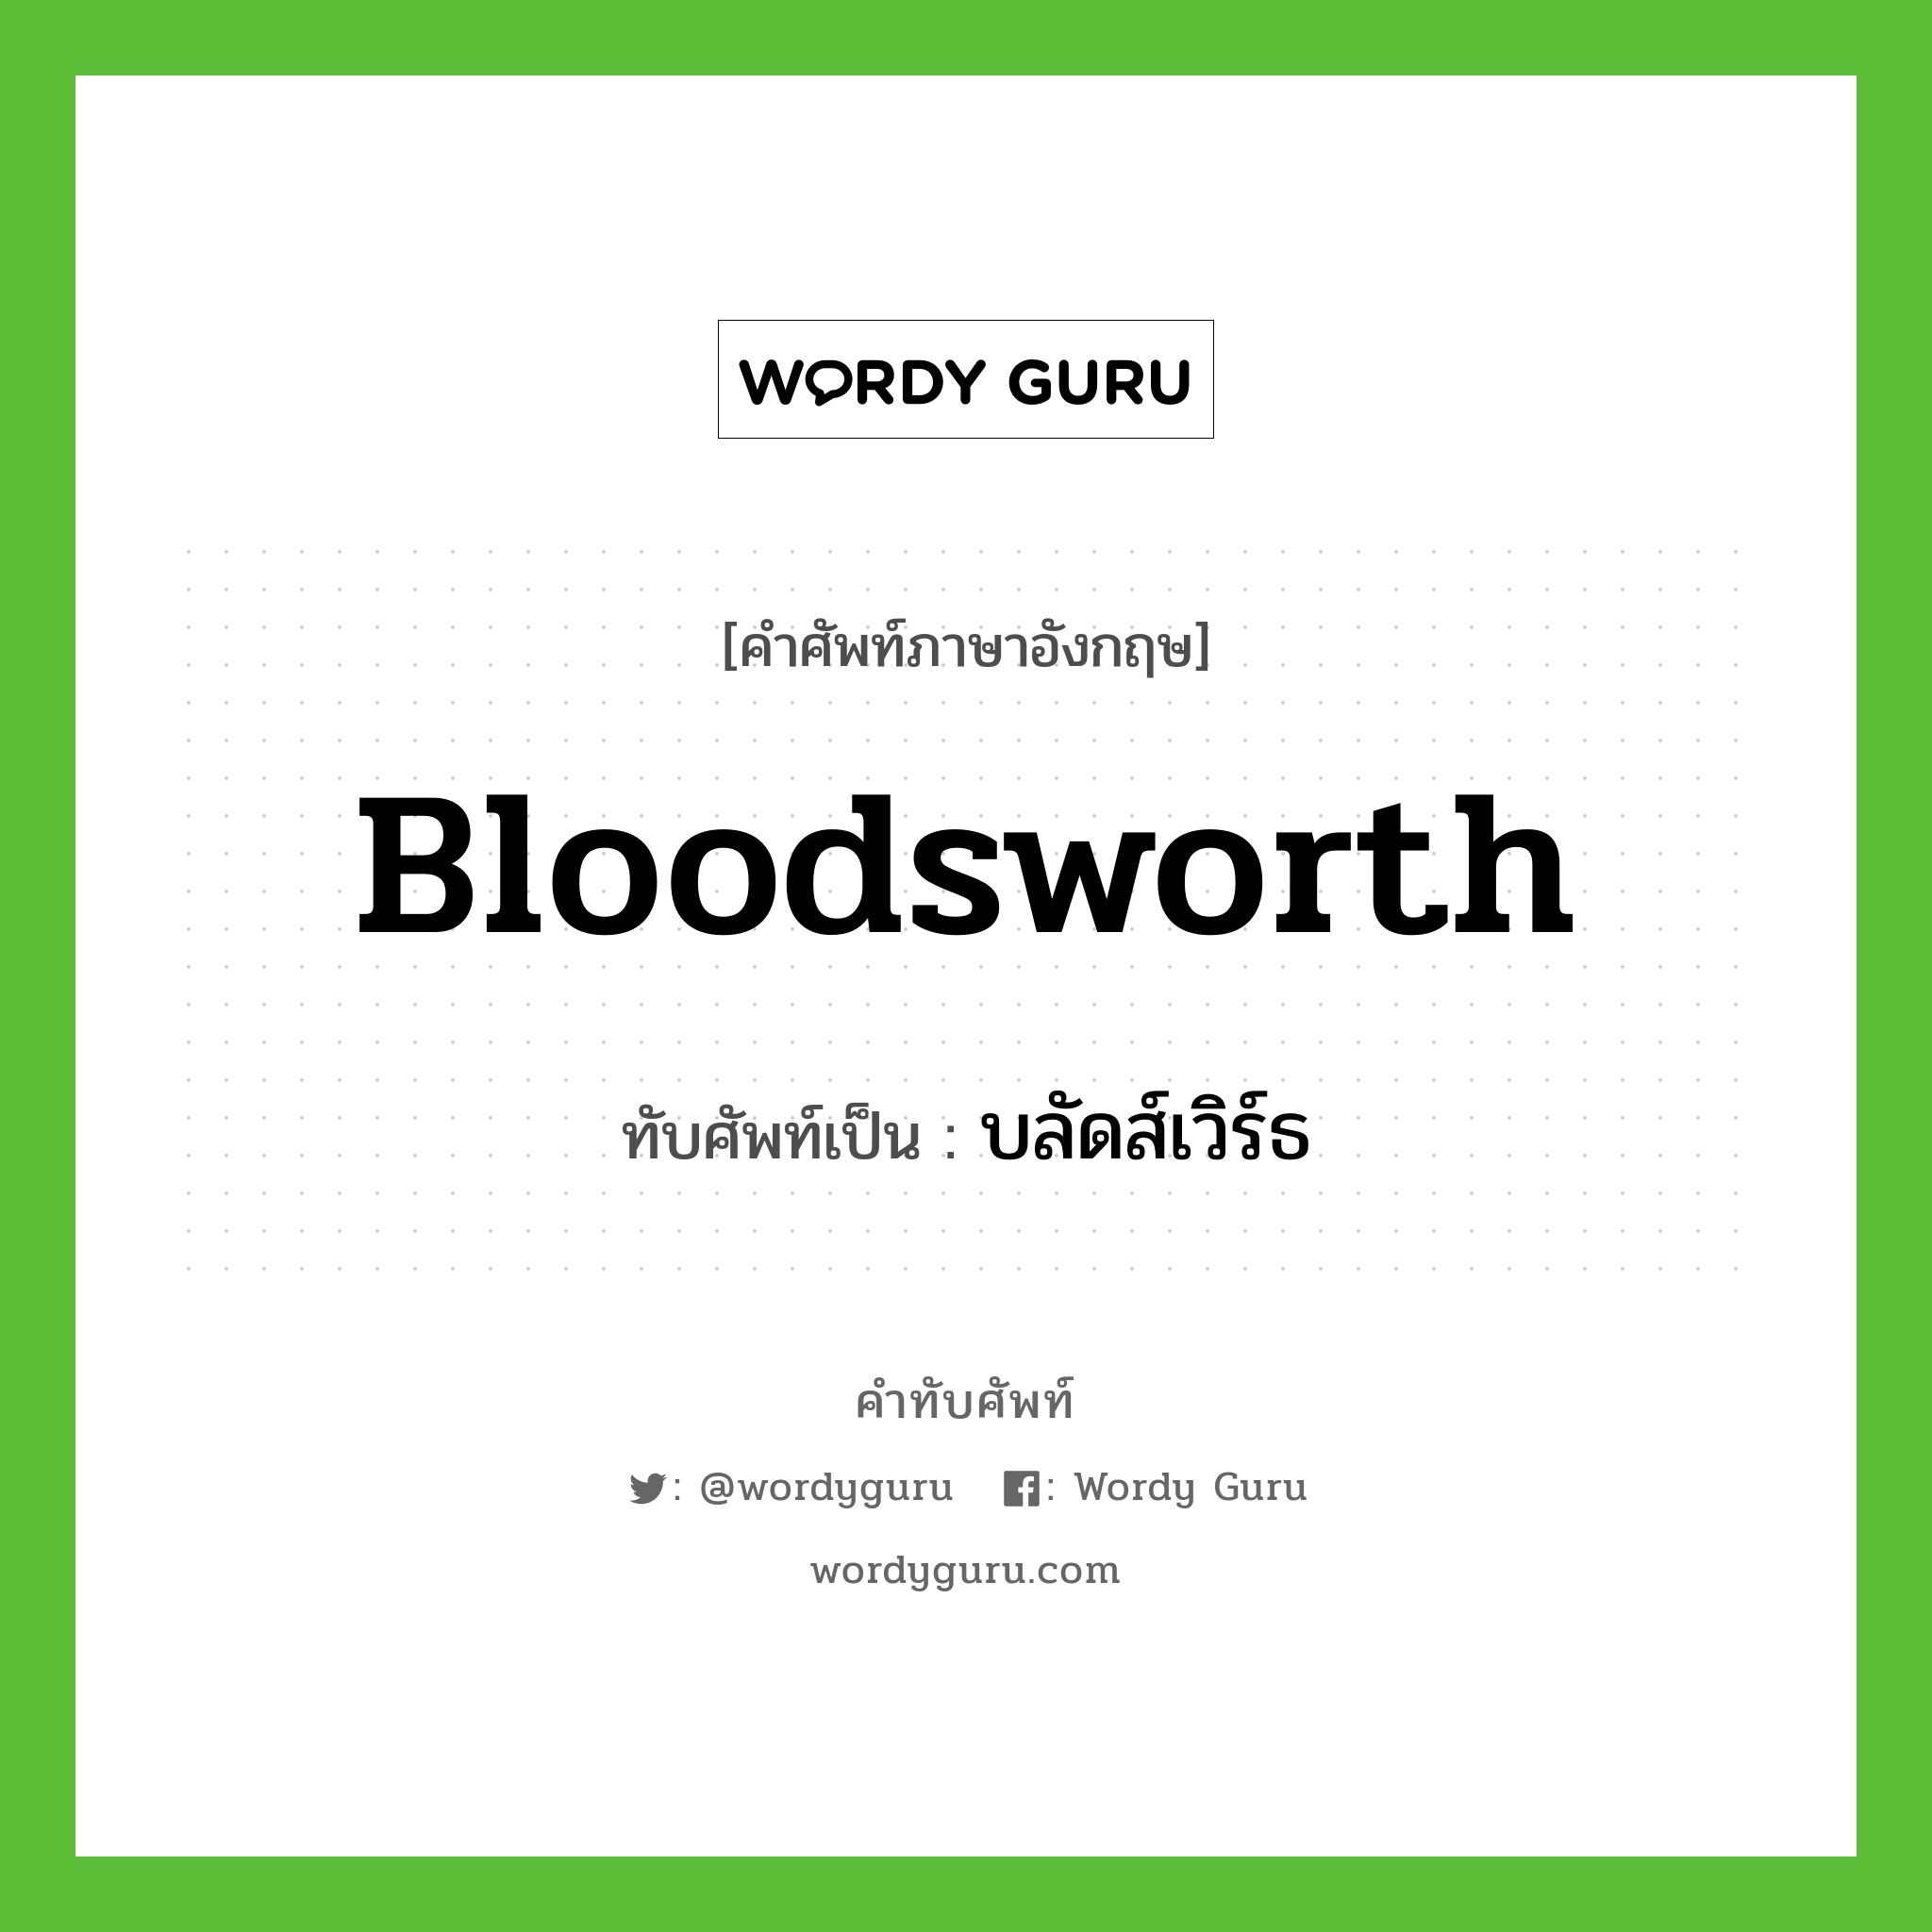 Bloodsworth เขียนเป็นคำไทยว่าอะไร?, คำศัพท์ภาษาอังกฤษ Bloodsworth ทับศัพท์เป็น บลัดส์เวิร์ธ